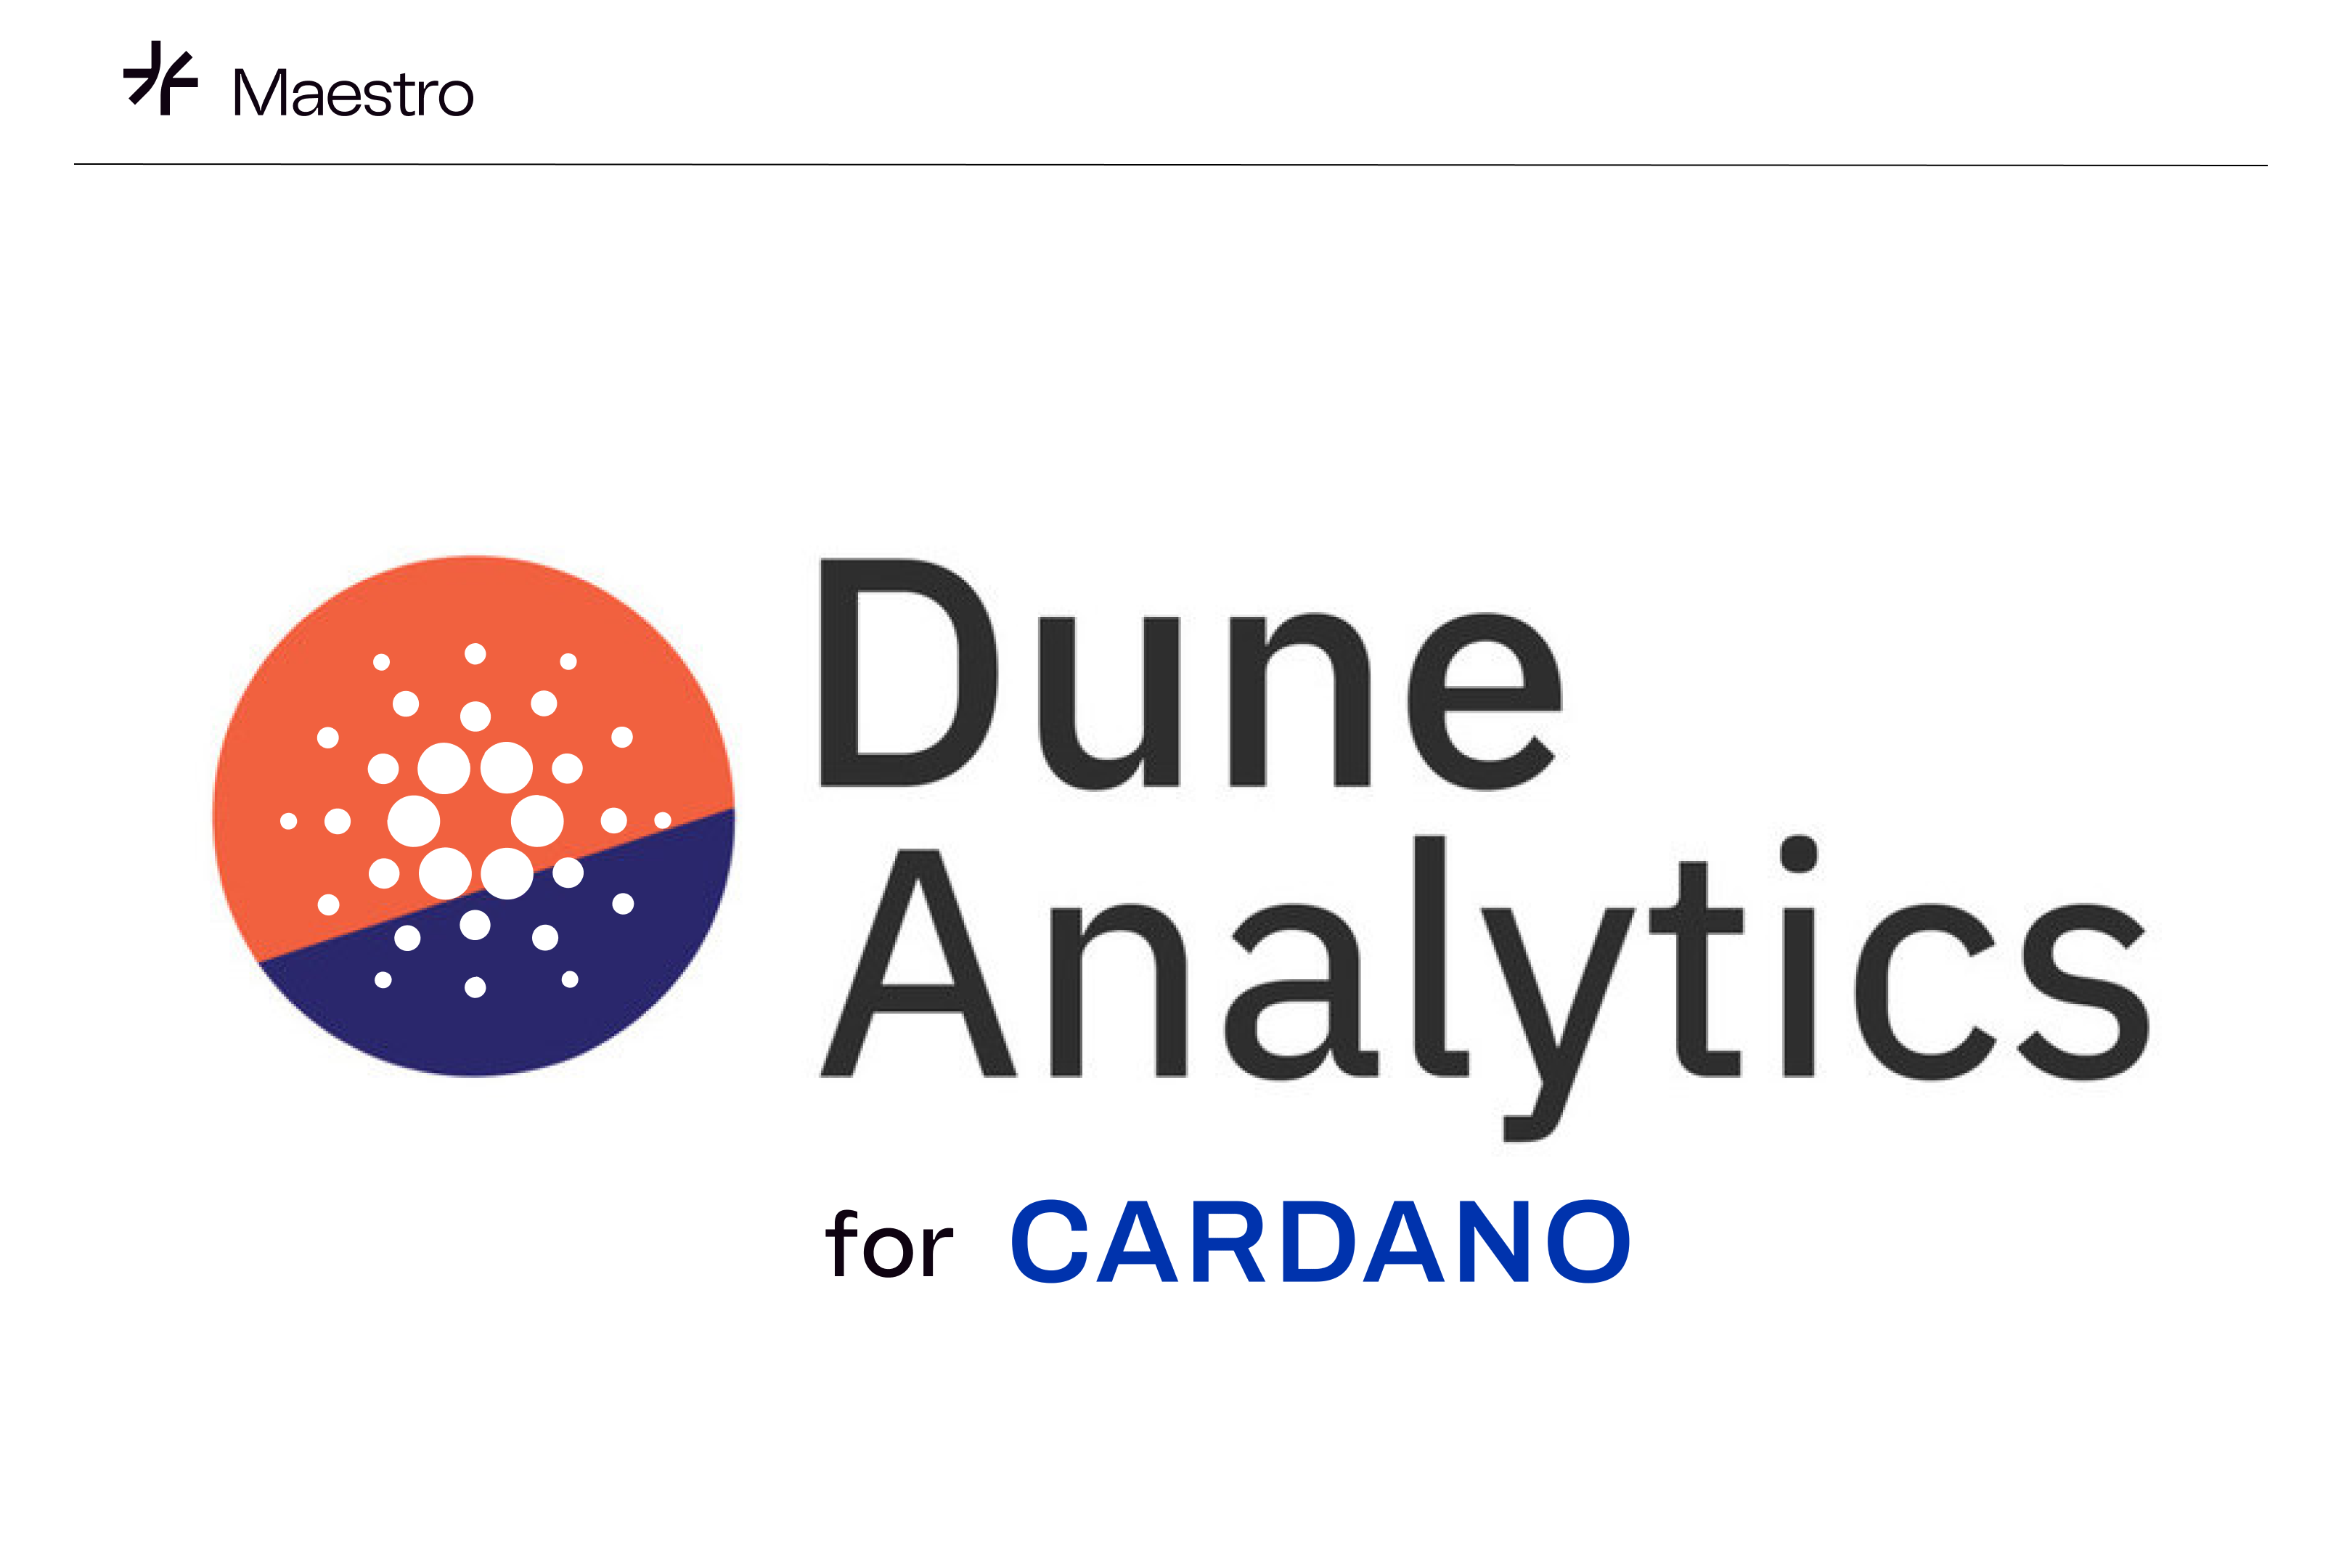 dune-analytics-7d4e0d.png